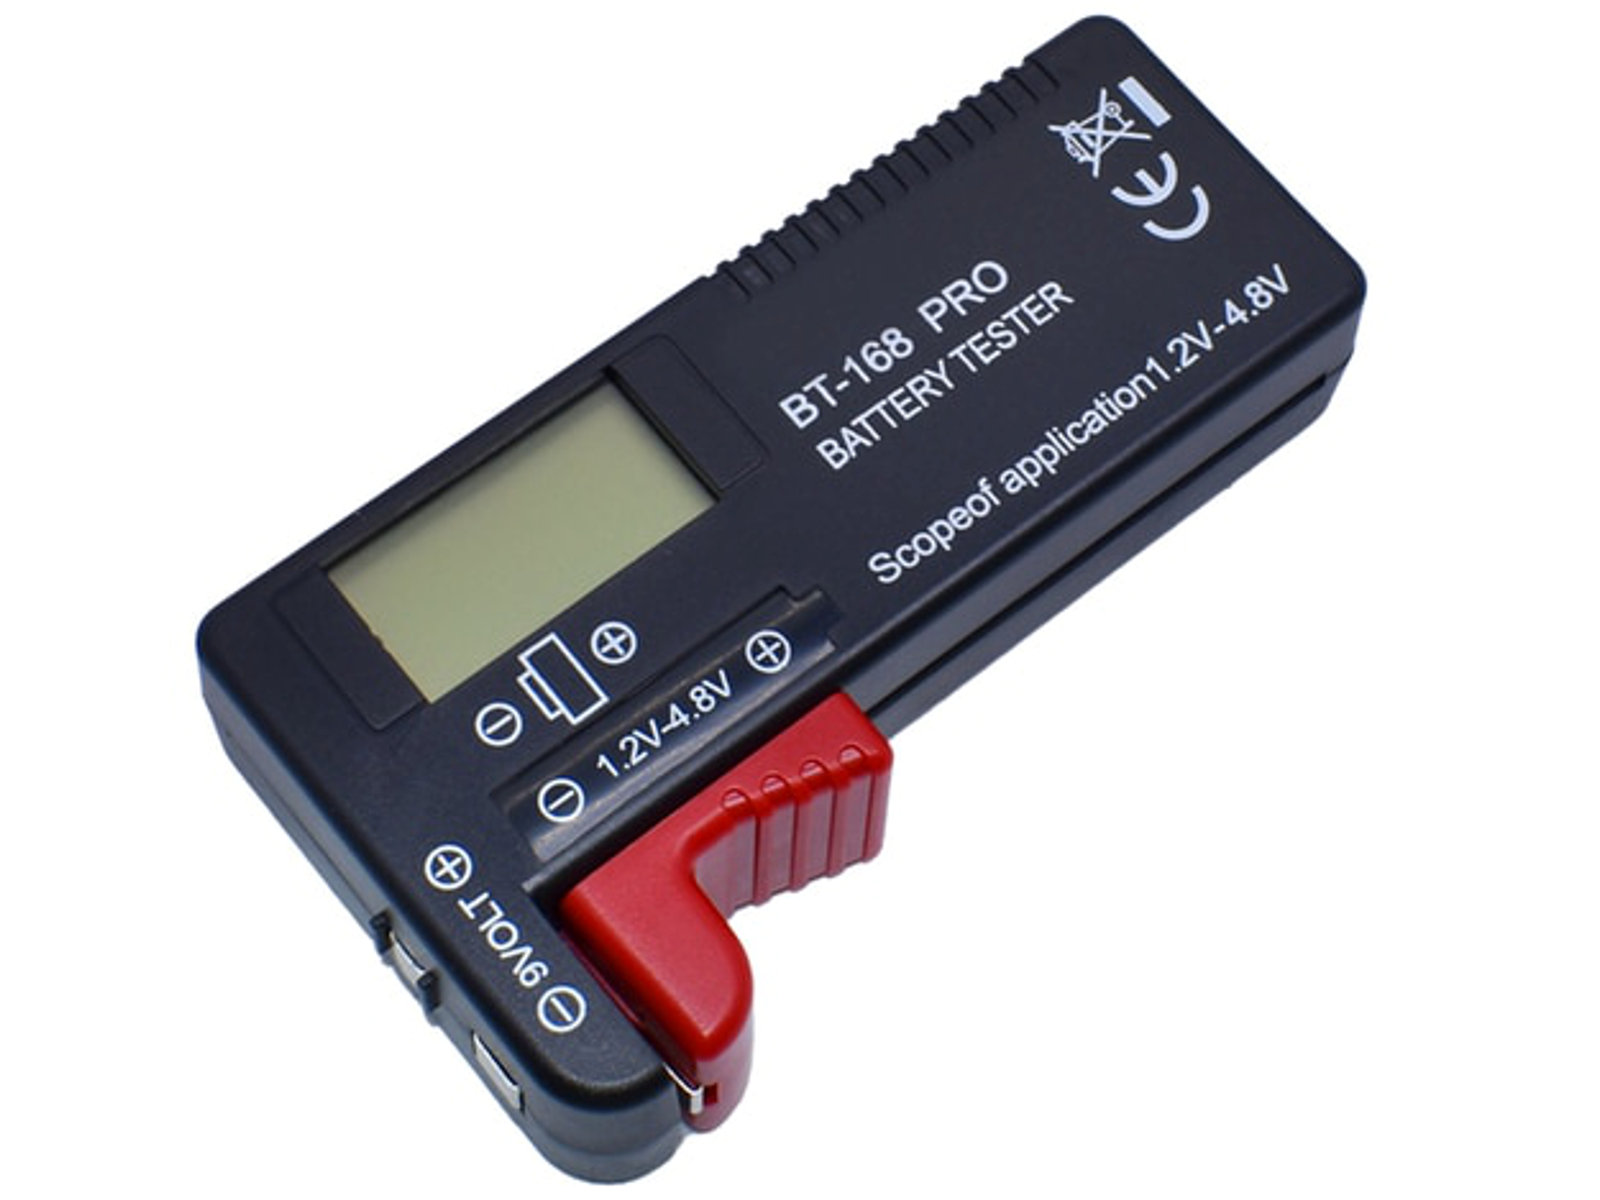 26798 LCD battery tester 2